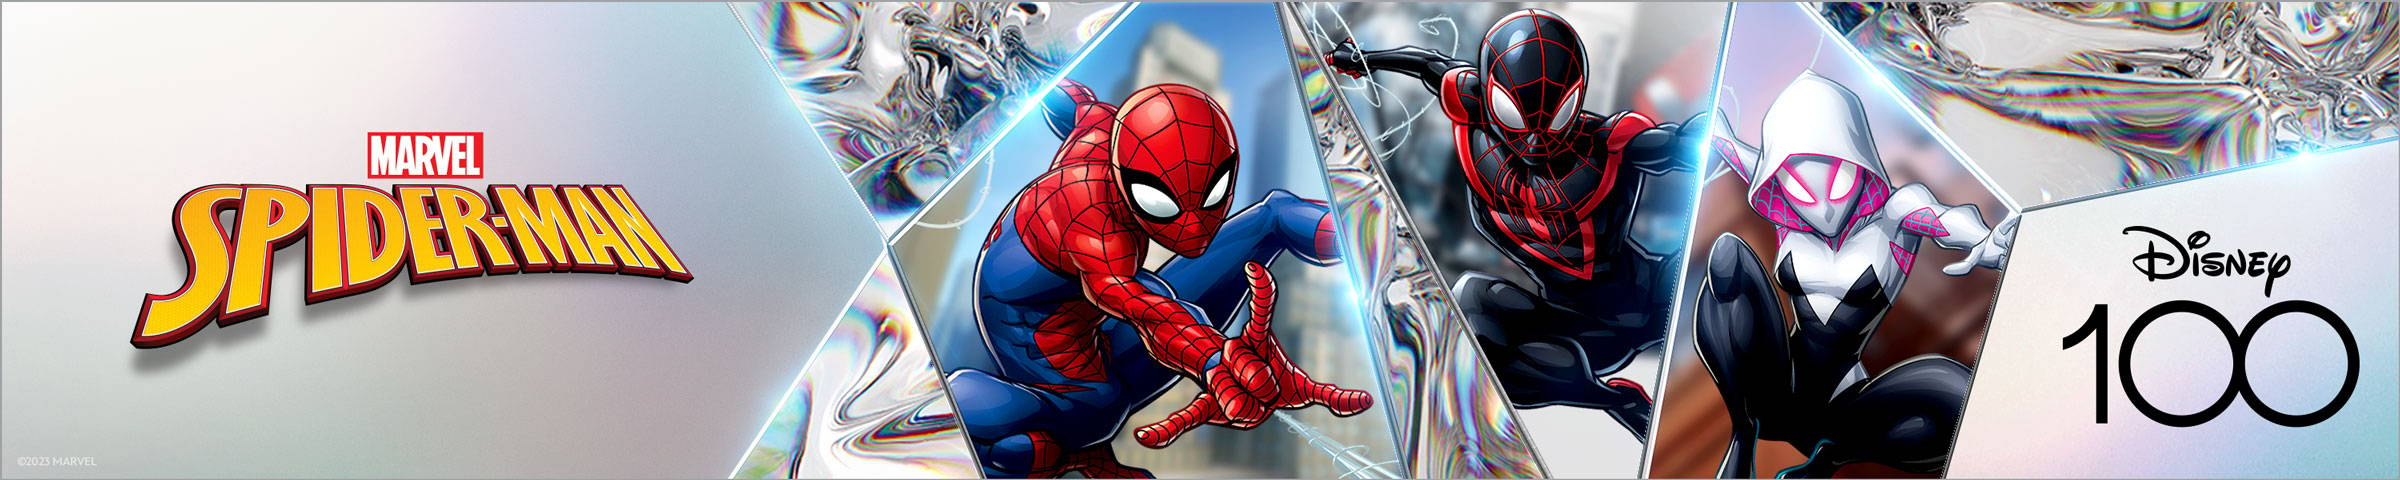 Marvel Spider-Man - Disney 100